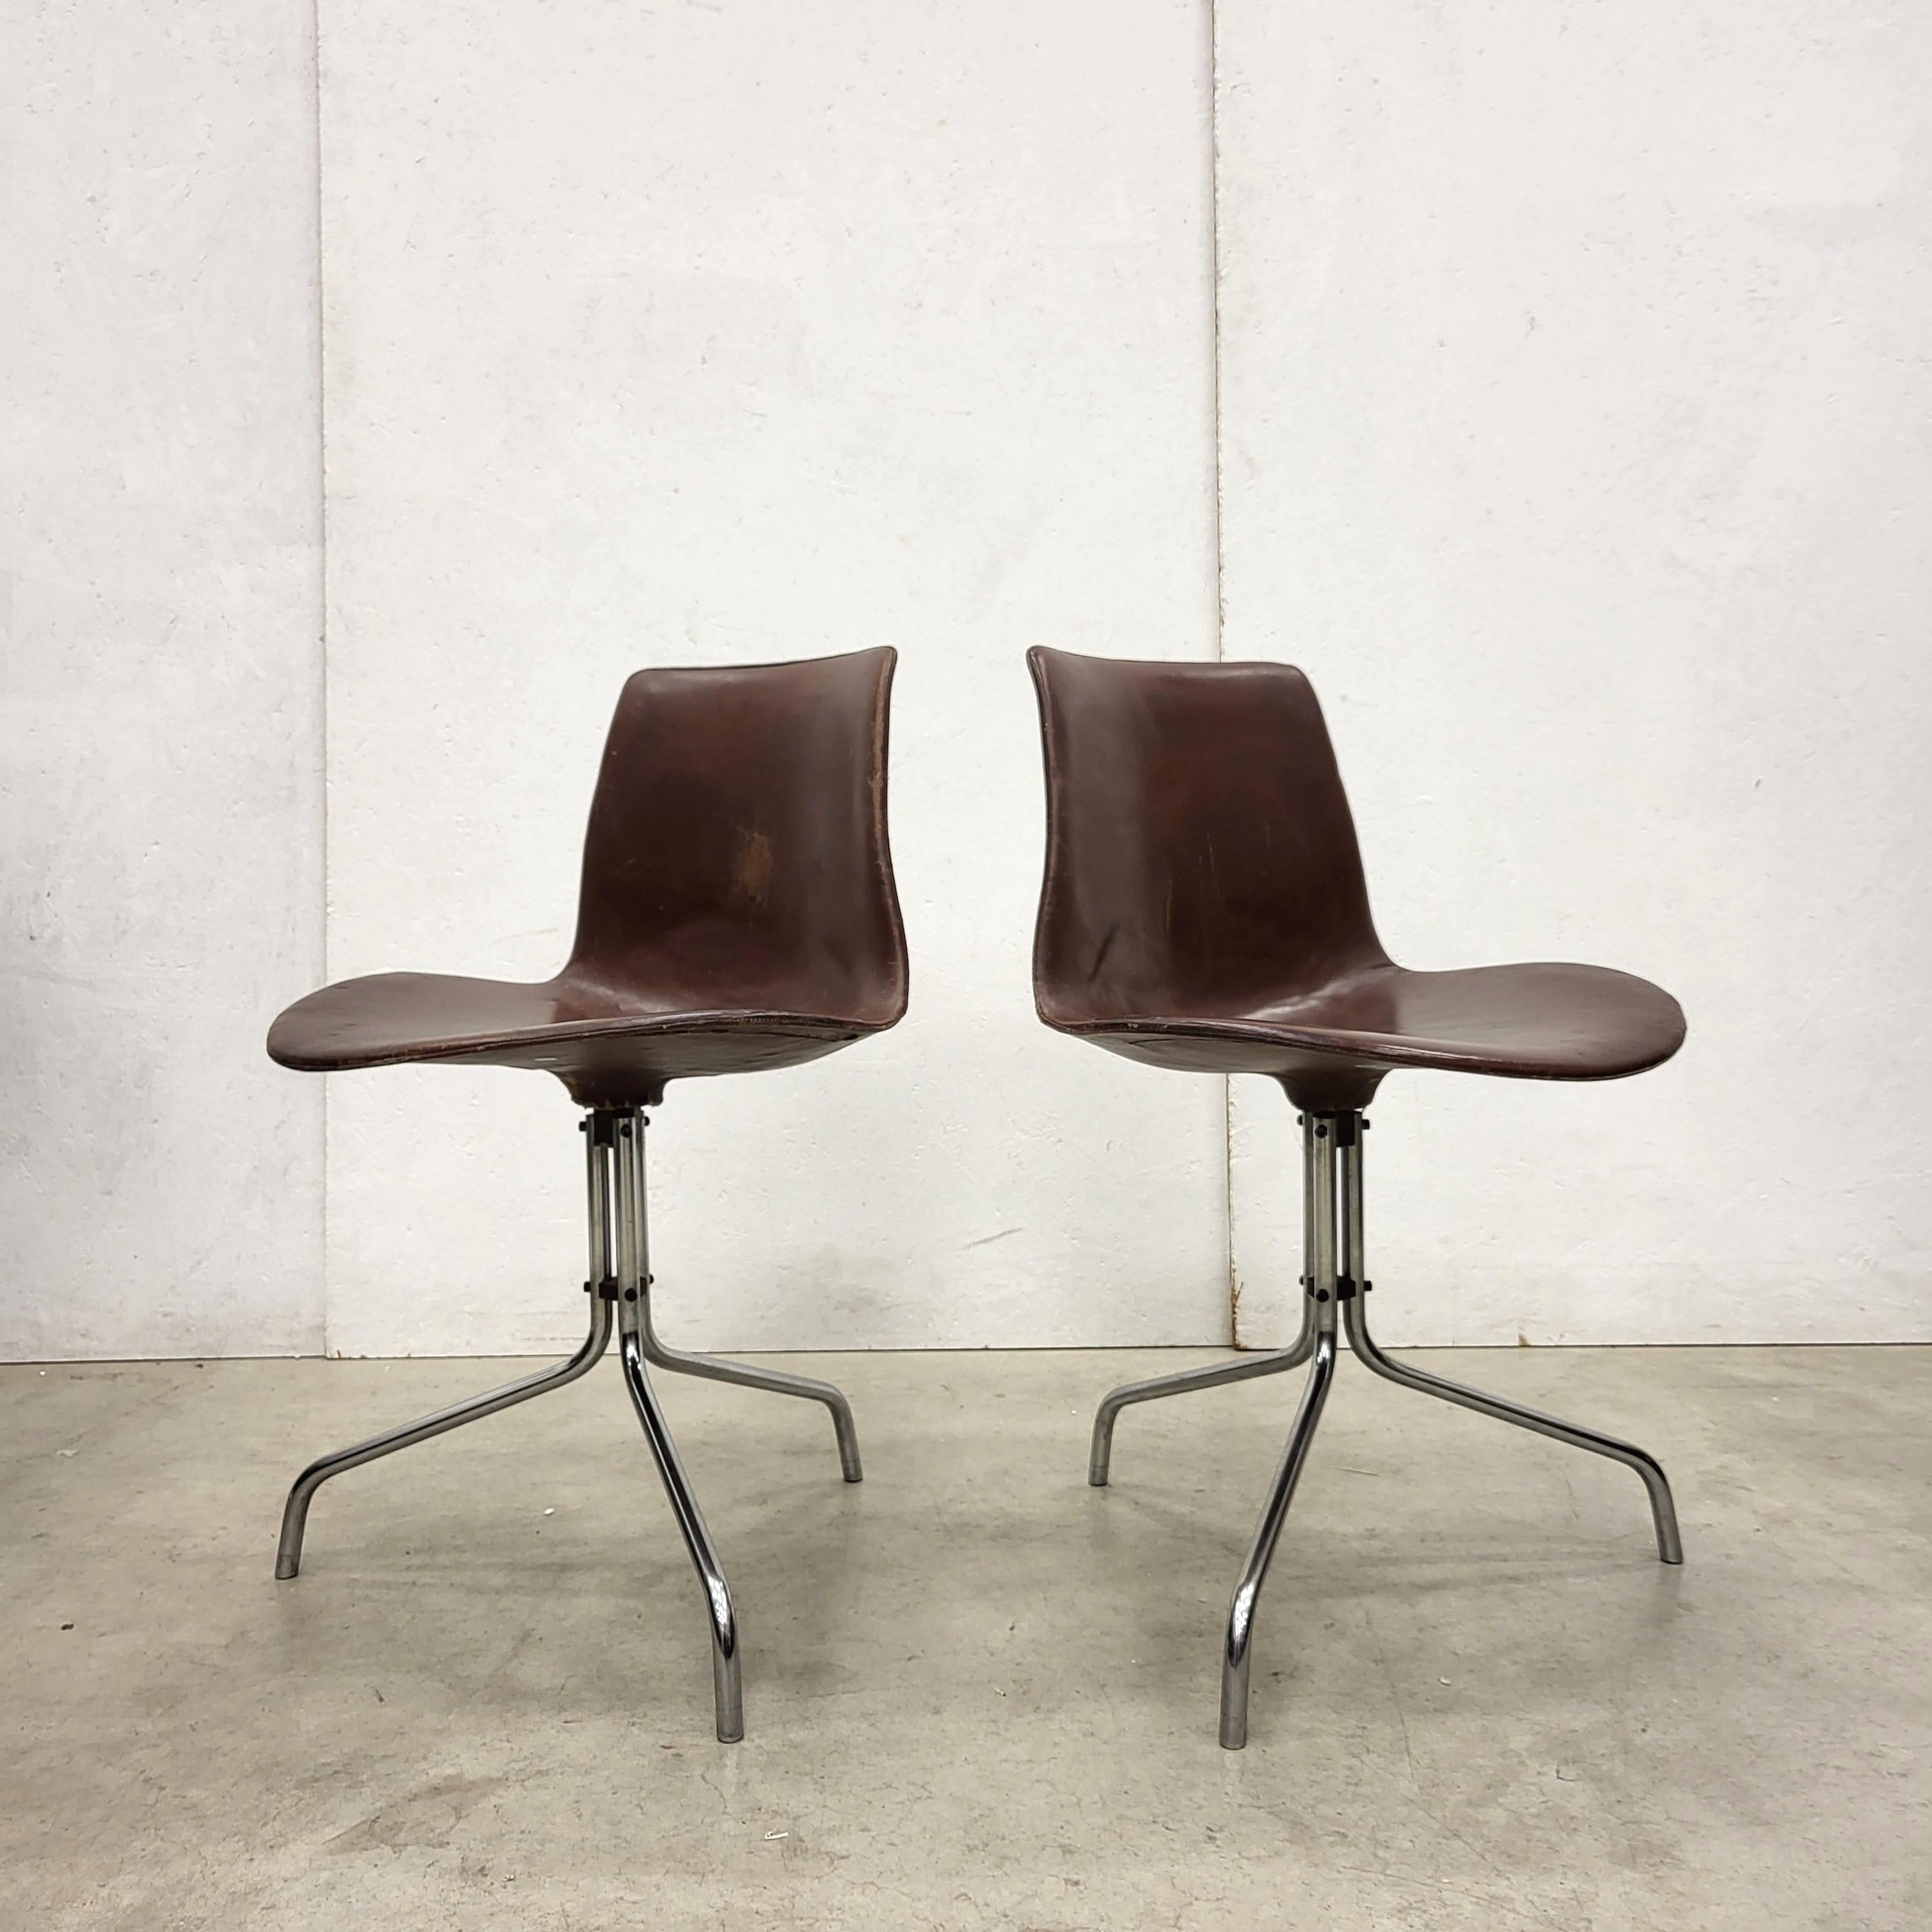 Seltenes Paar Schreibtischstühle Modell BO611 von Jorgen Kastholm & Preben Fabricius.
Die Stühle wurden Mitte der 1960er Jahre von Bo-Ex in Dänemark hergestellt.

Die Stühle bestehen aus einer Fiberglasschale mit brauner Lederpolsterung auf einem